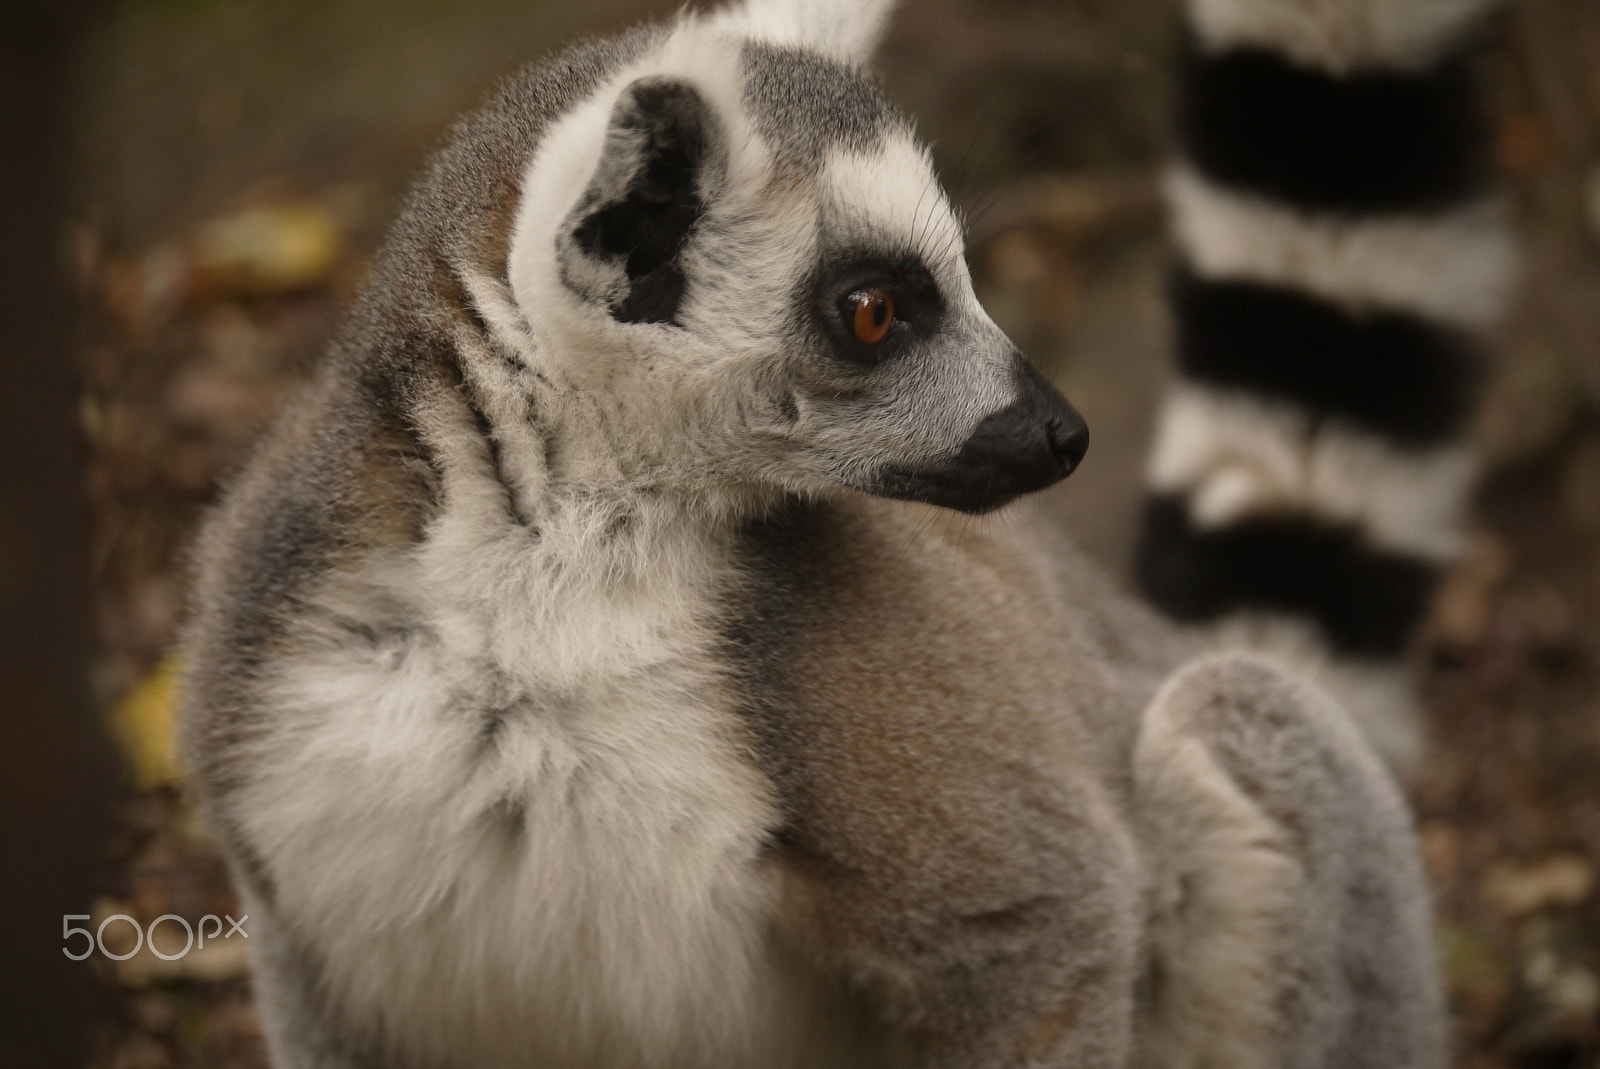 Panasonic Lumix DMC-GF3 sample photo. A curious lemur photography